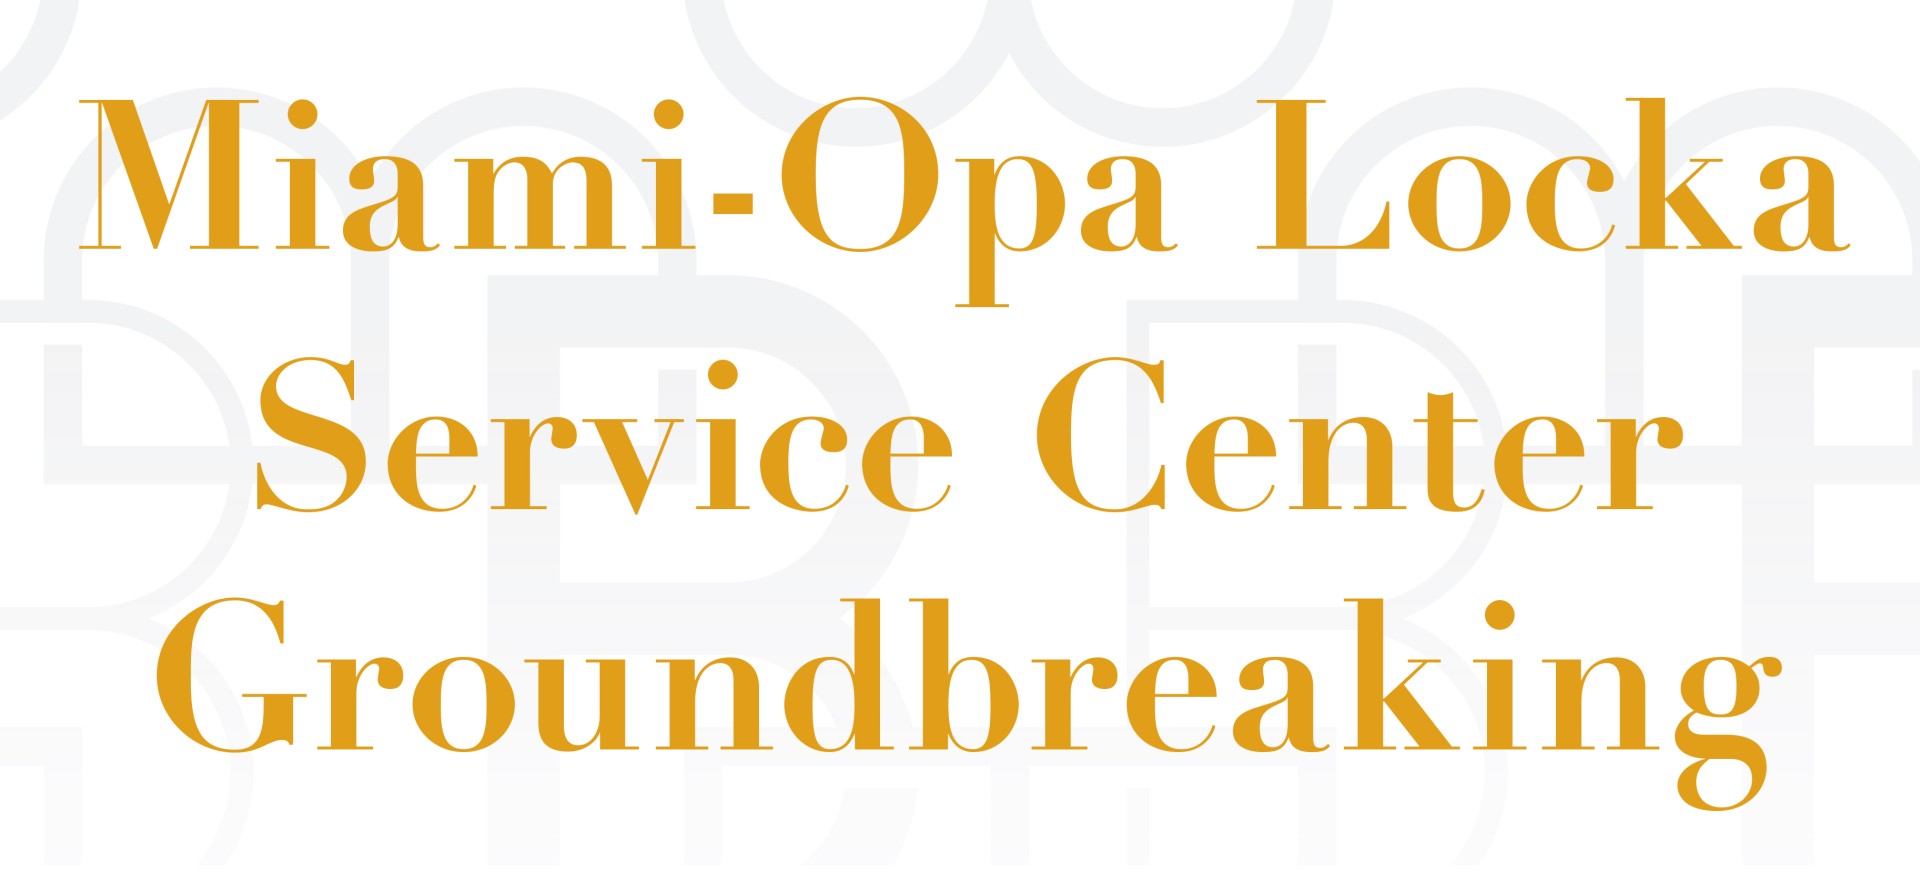 Miami - Opa Locka  Service Center Groundbreaking